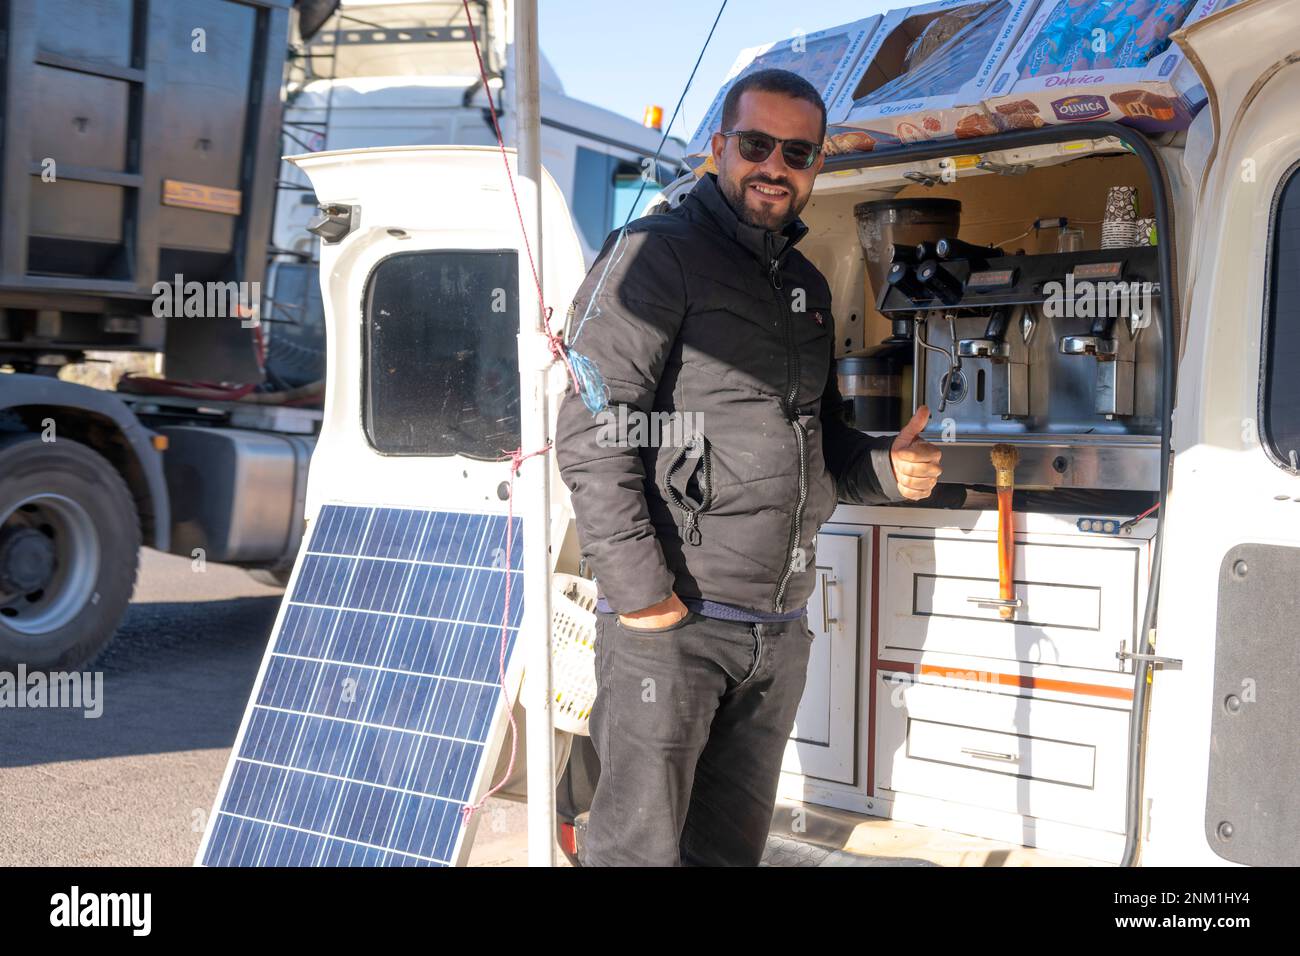 Afrika, Marokko, Südmarokko, Ouarzazate, mobiles Cafe am Strassenrand mit Solarstrom betriebener Espressomaschine Stockfoto